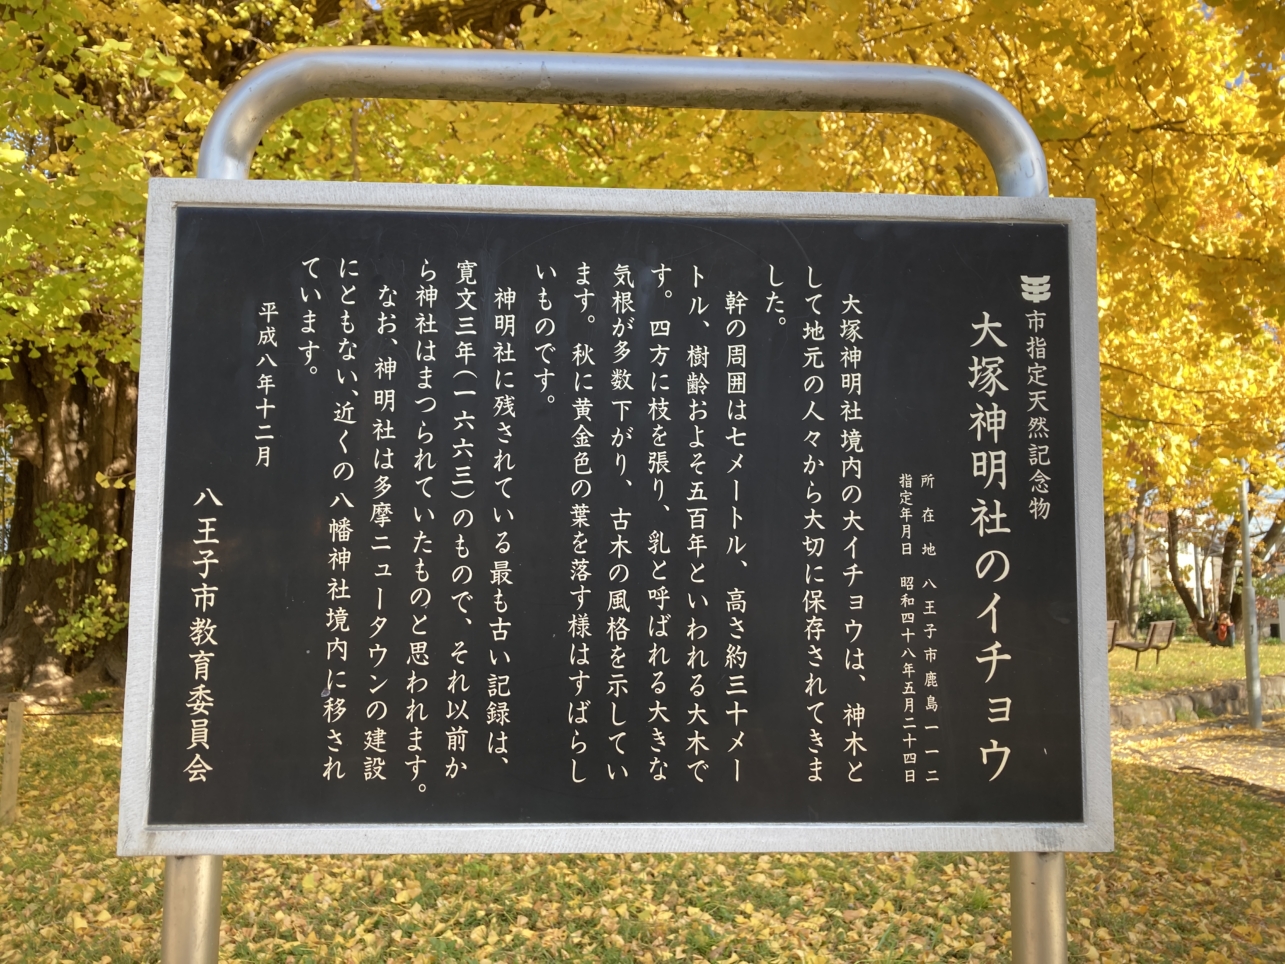 【大塚帝京】多摩の紅葉⑥大塚神明社のイチョウ